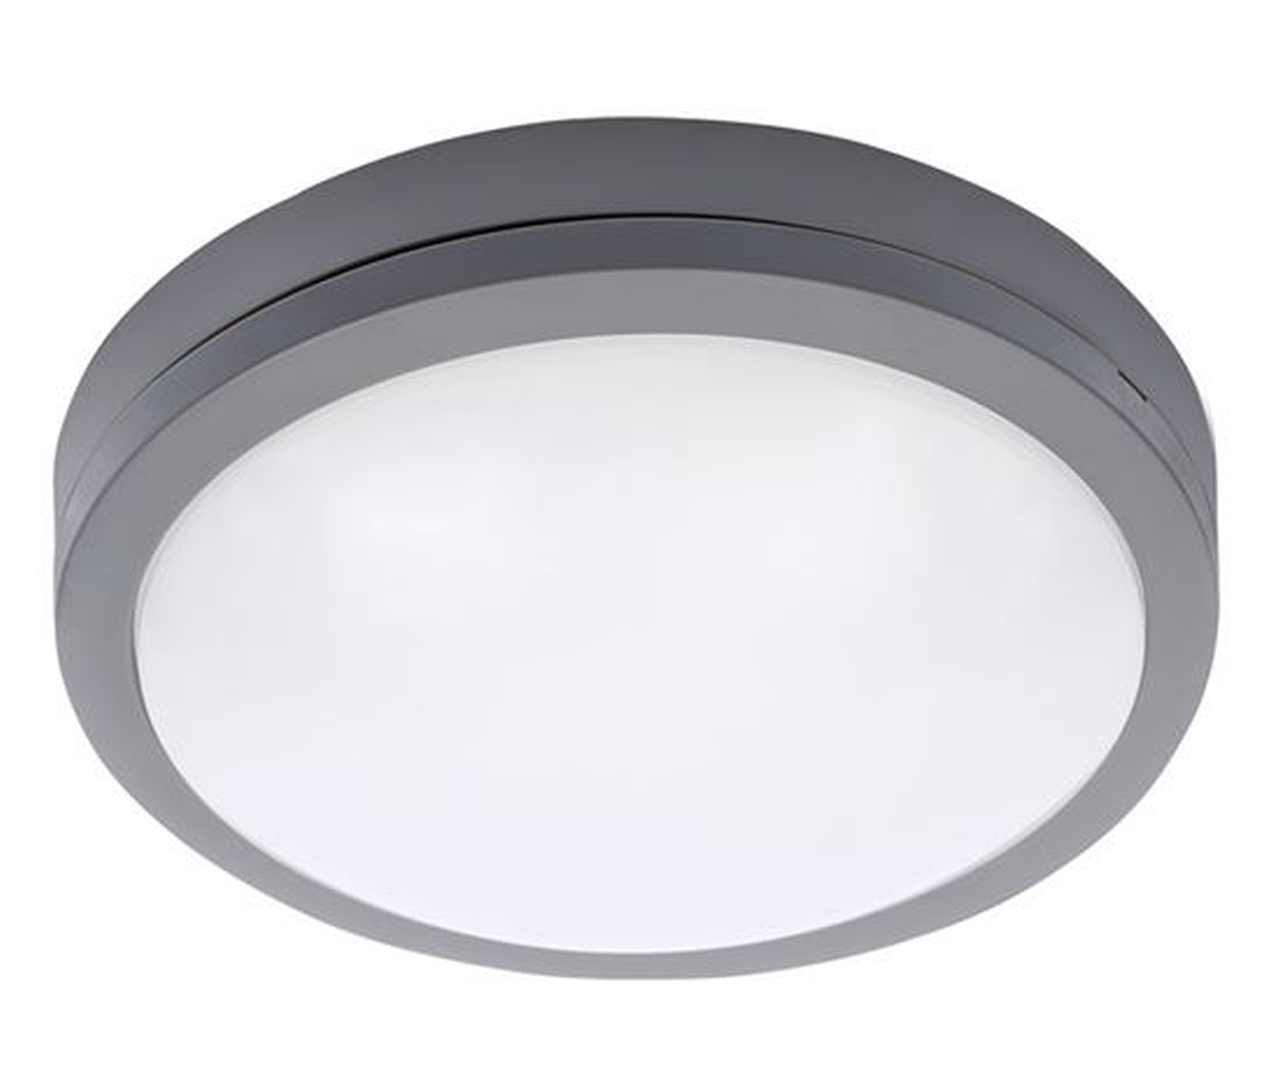 Solight Šedé LED stropní/nástěnné svítidlo 230mm 20W IP54 se senzorem WO781-G-M